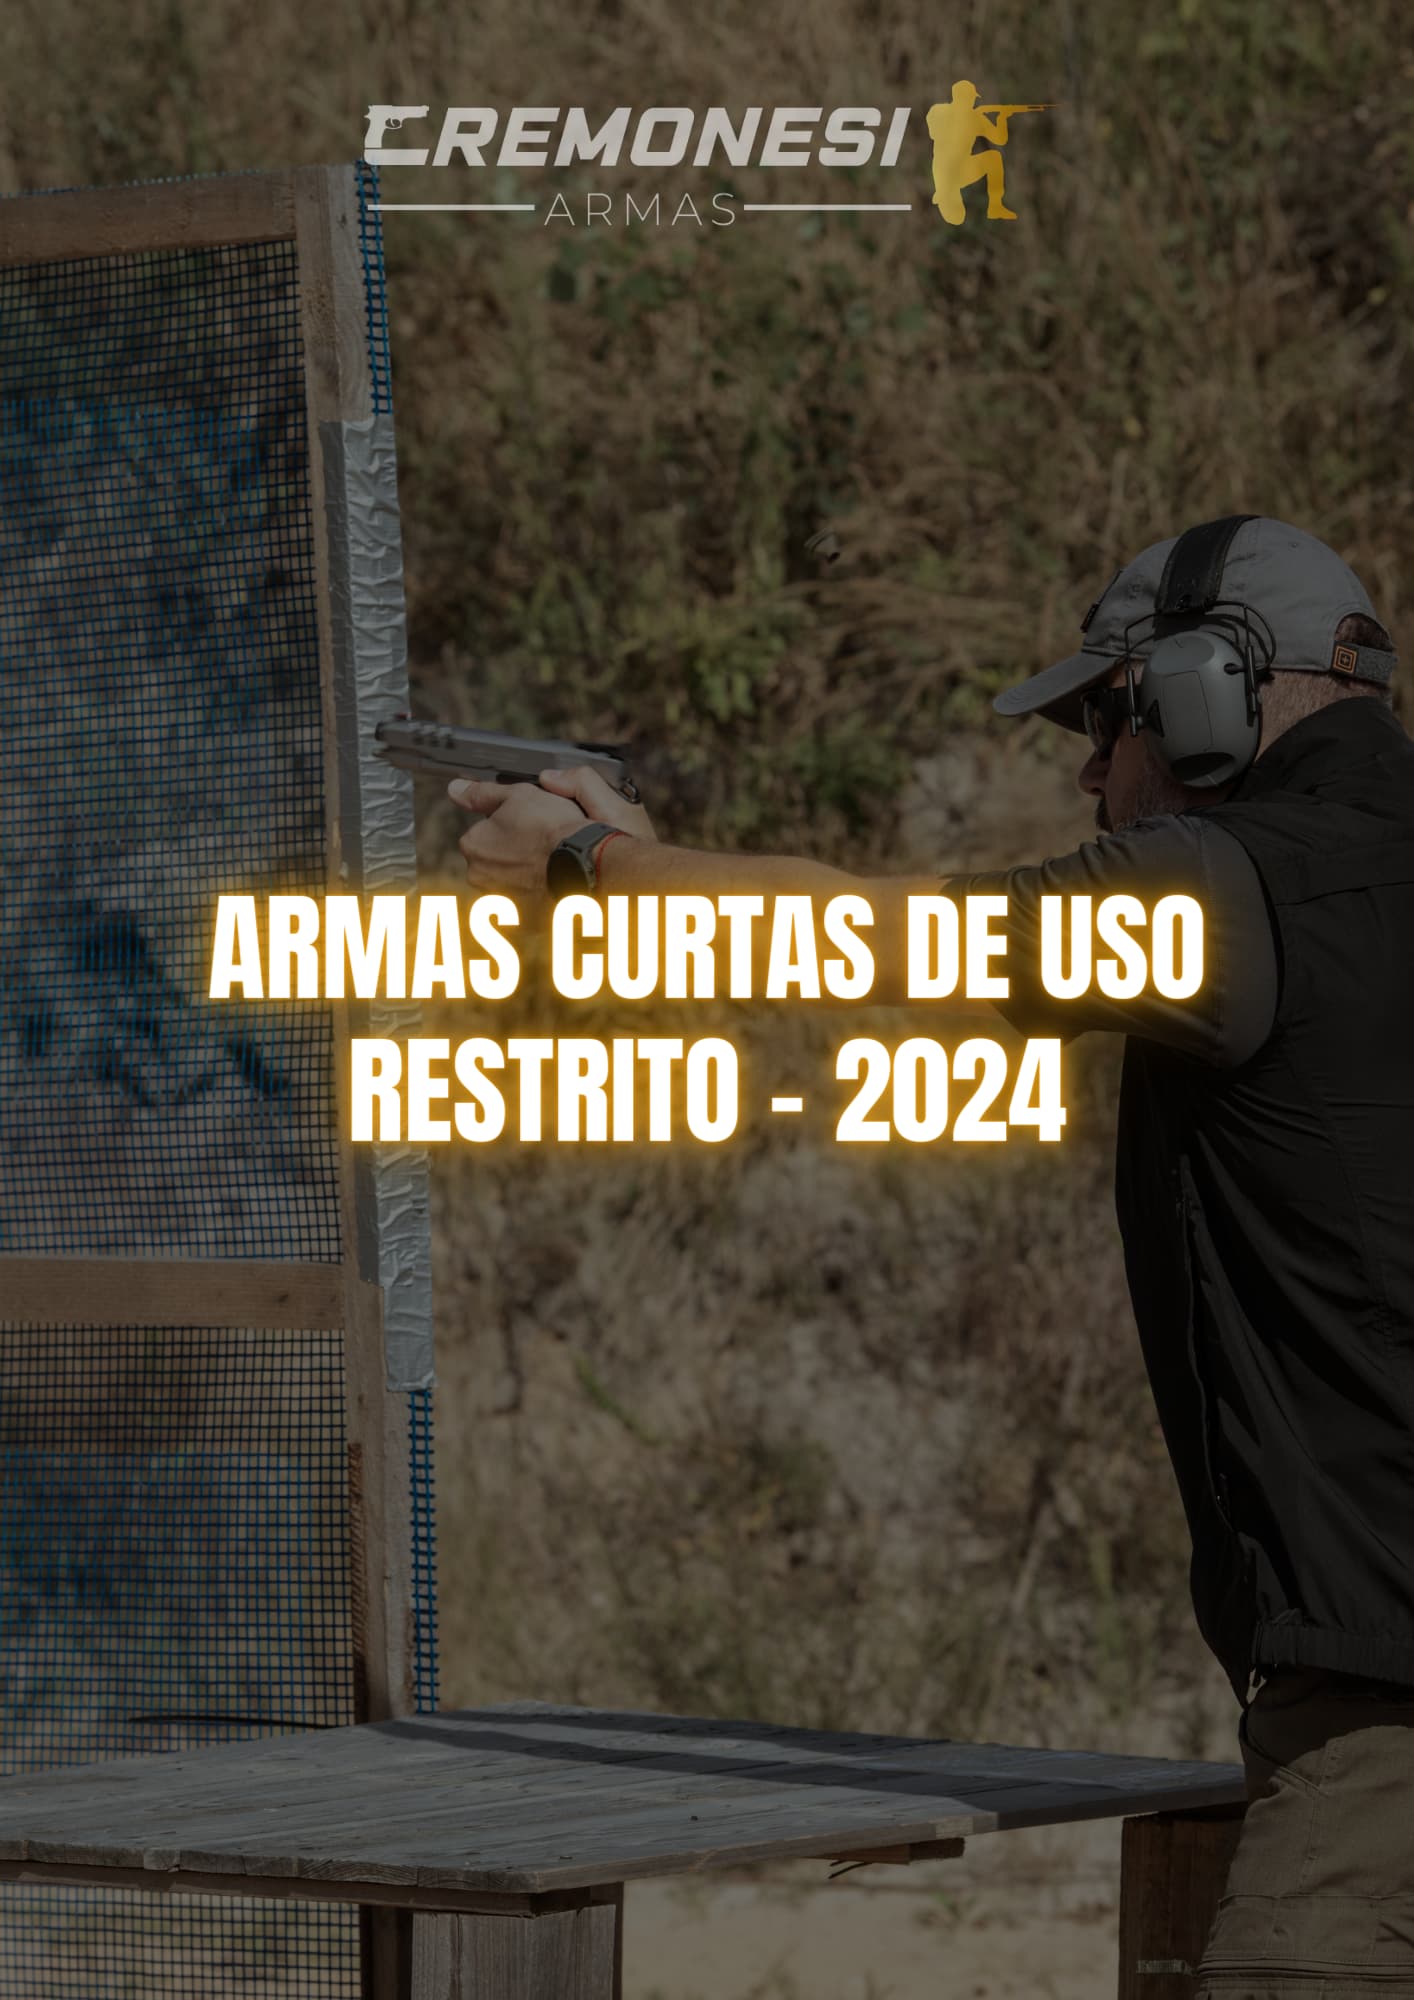 Armas curtas de uso restrito - 2024